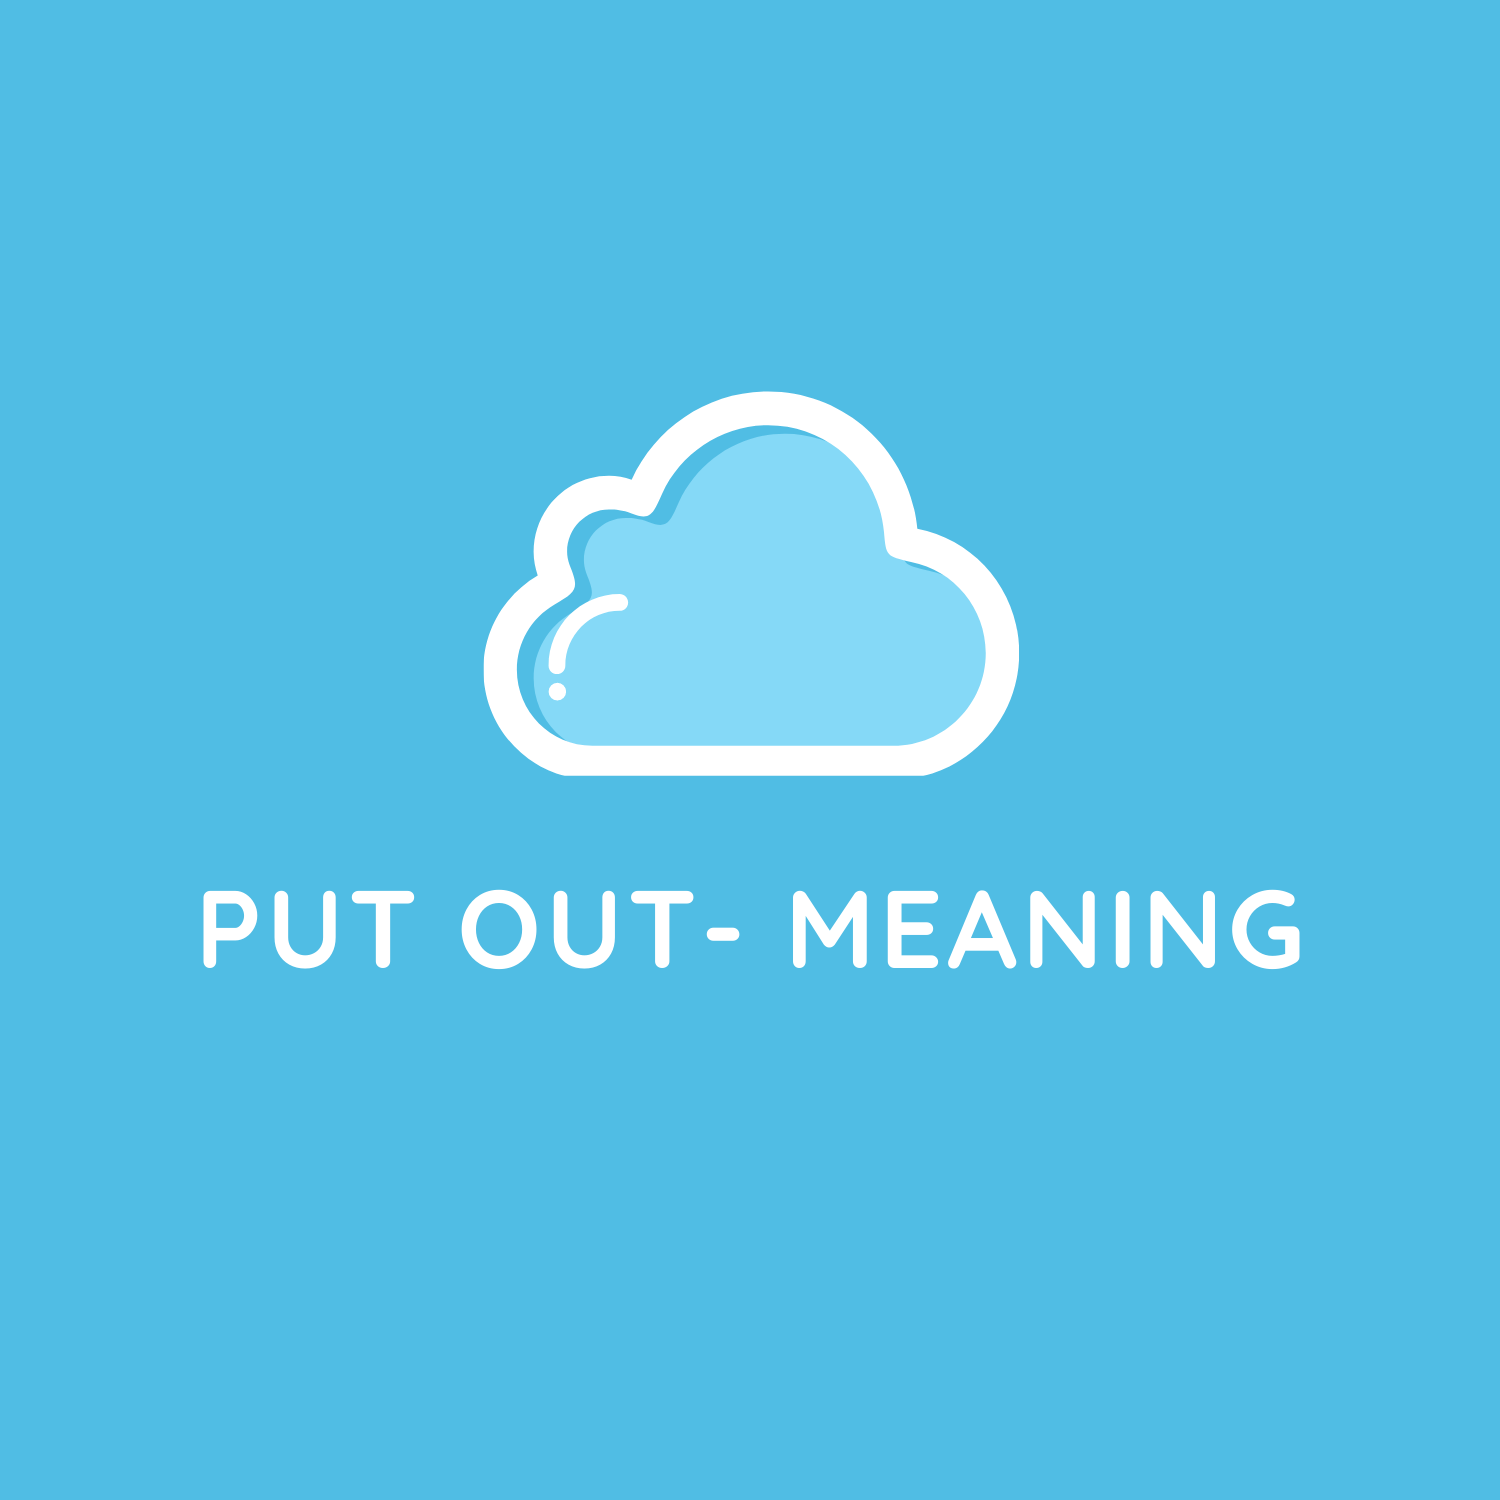 Put Out là gì và cấu trúc cụm từ Put Out trong câu Tiếng Anh